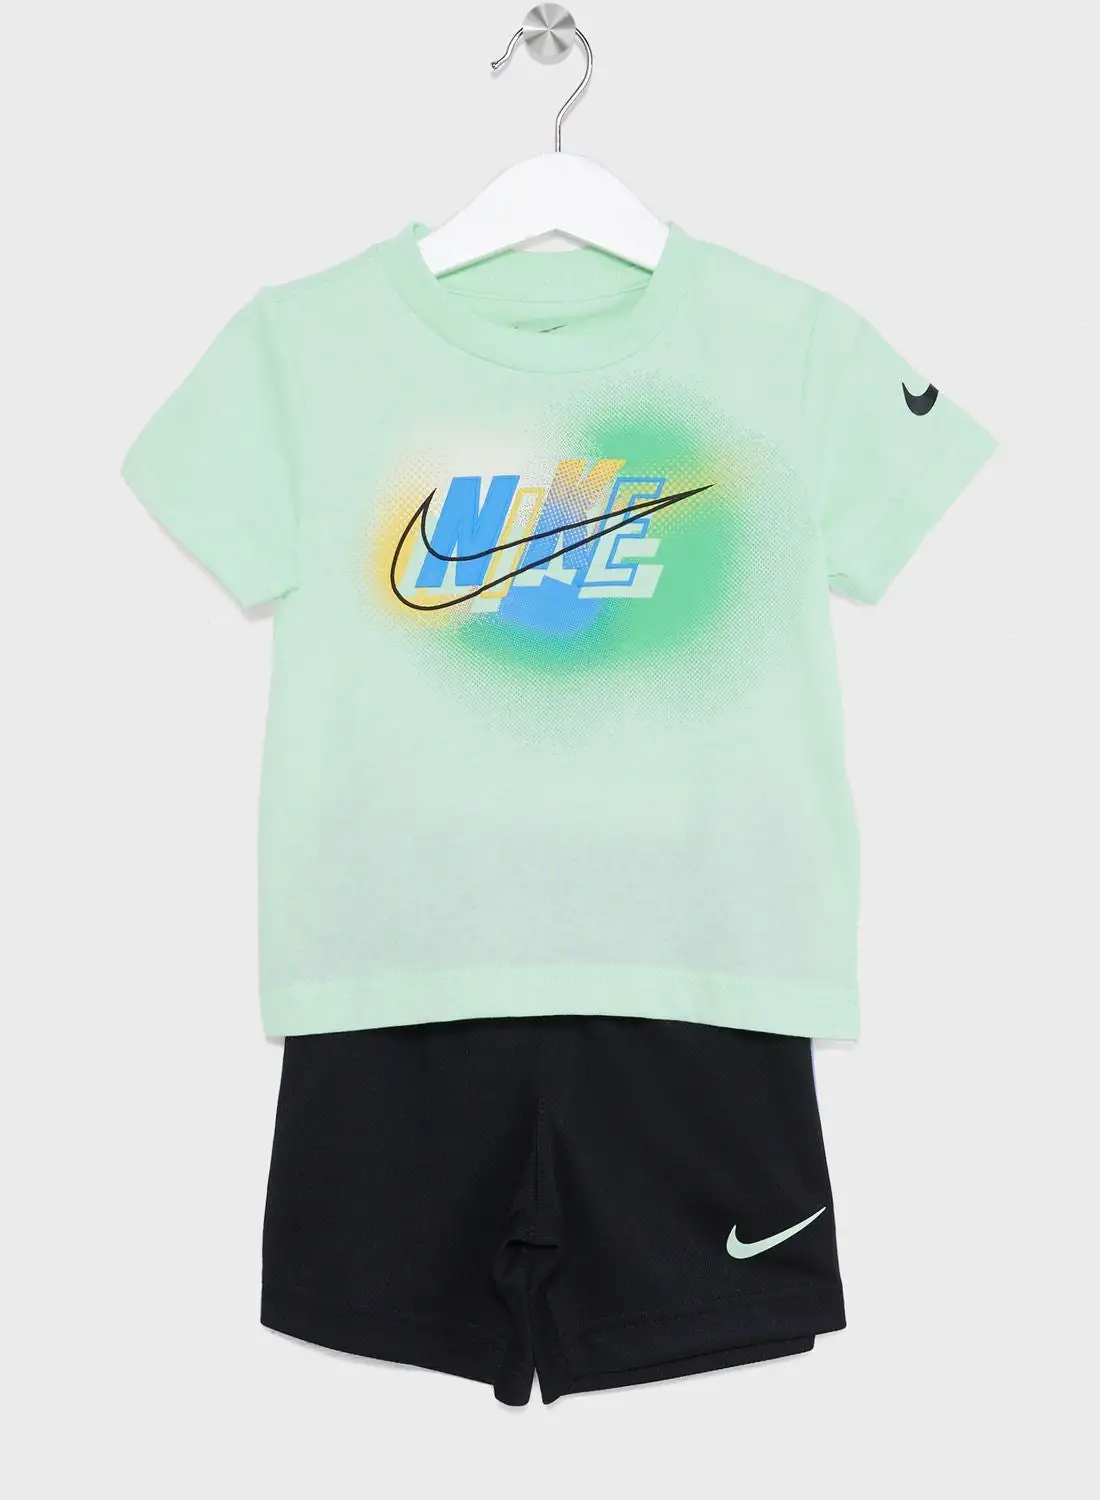 Nike Infant Hazy Rays T-Shirt Set